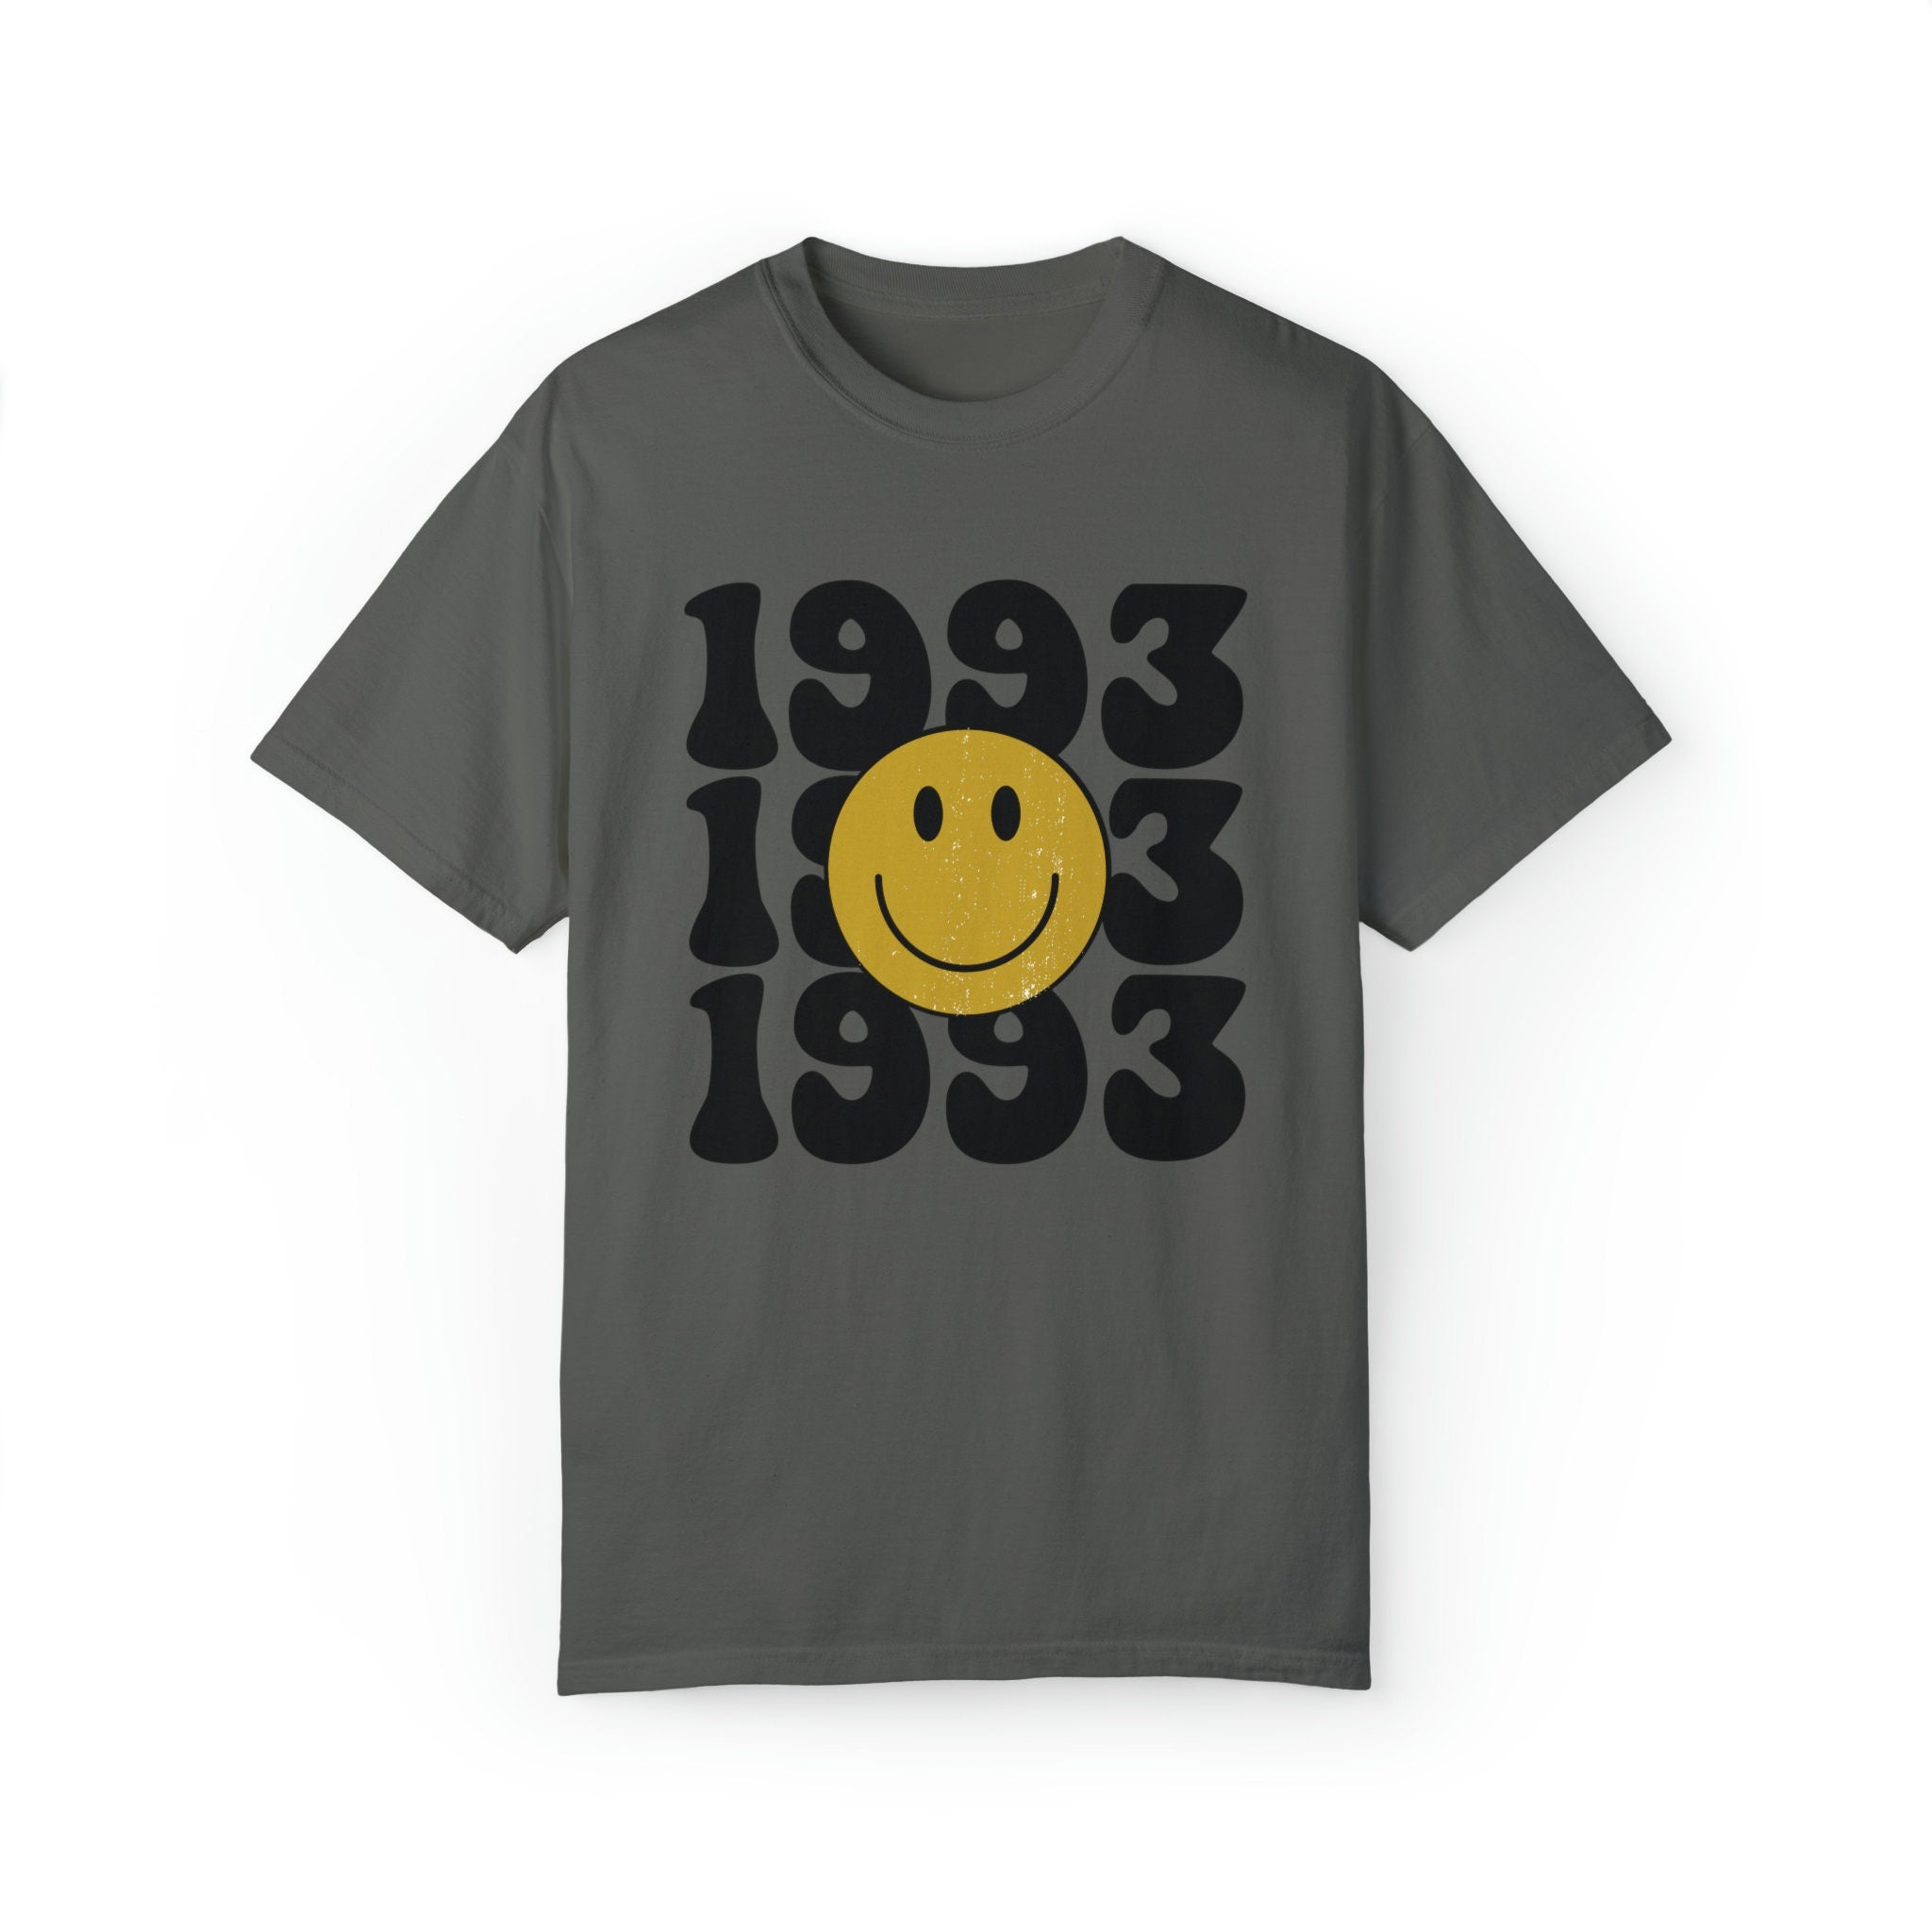 1993 Retro Shirt, Custom 30th Birthday Tshirt, Retro Vintage 30th Birthday 1993 Unisex TShirt 30th Birthday Gift For Her/Him/Them Dirty 30